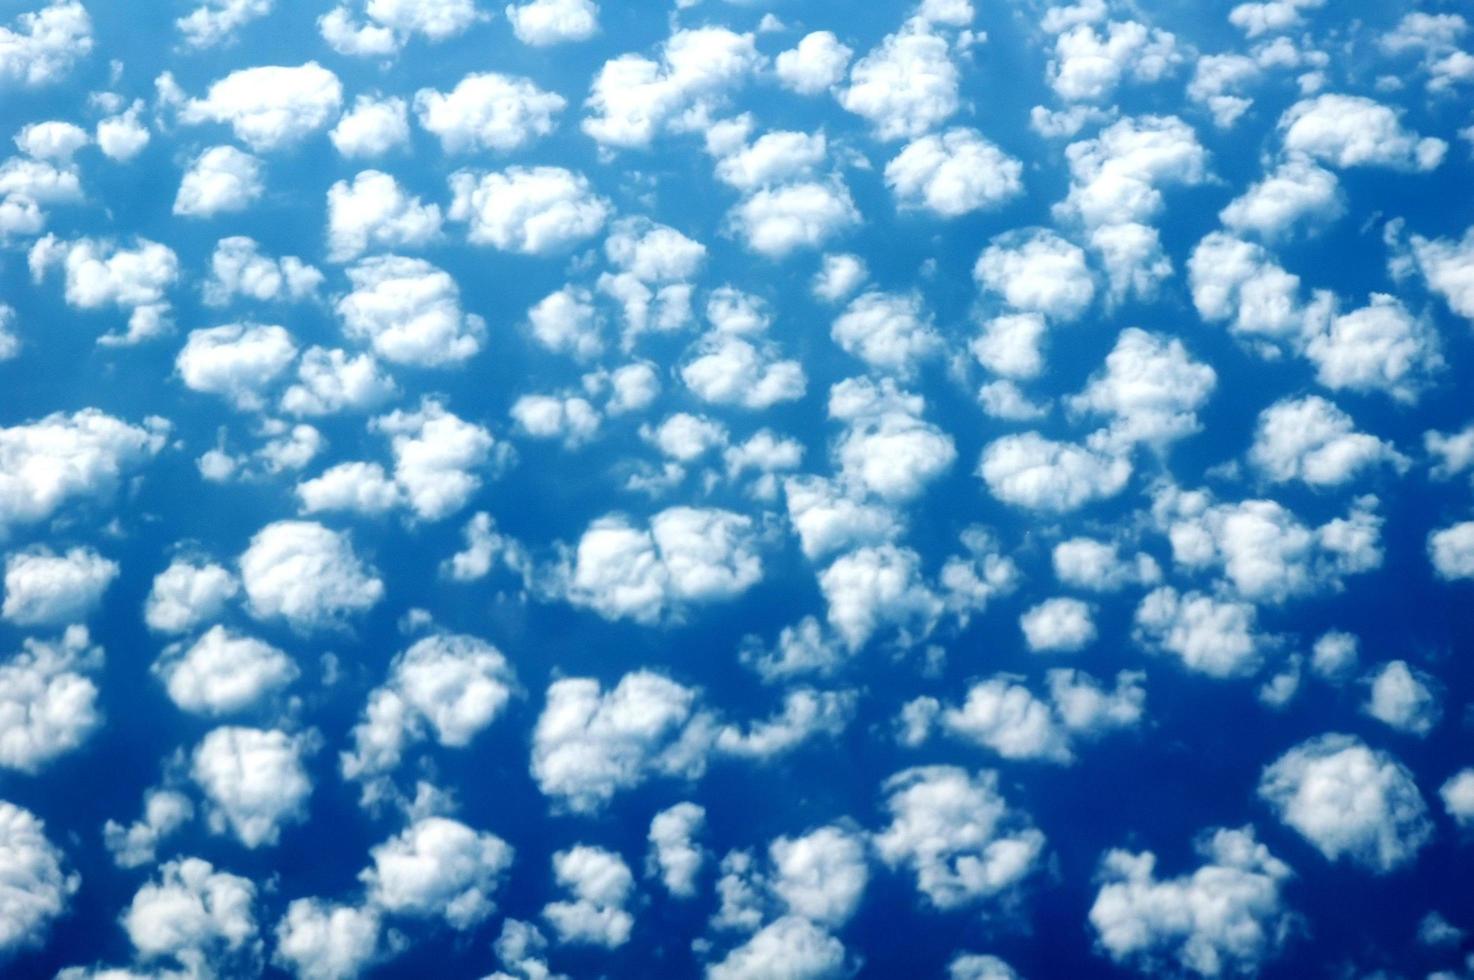 gezwollen wolken in de lucht foto